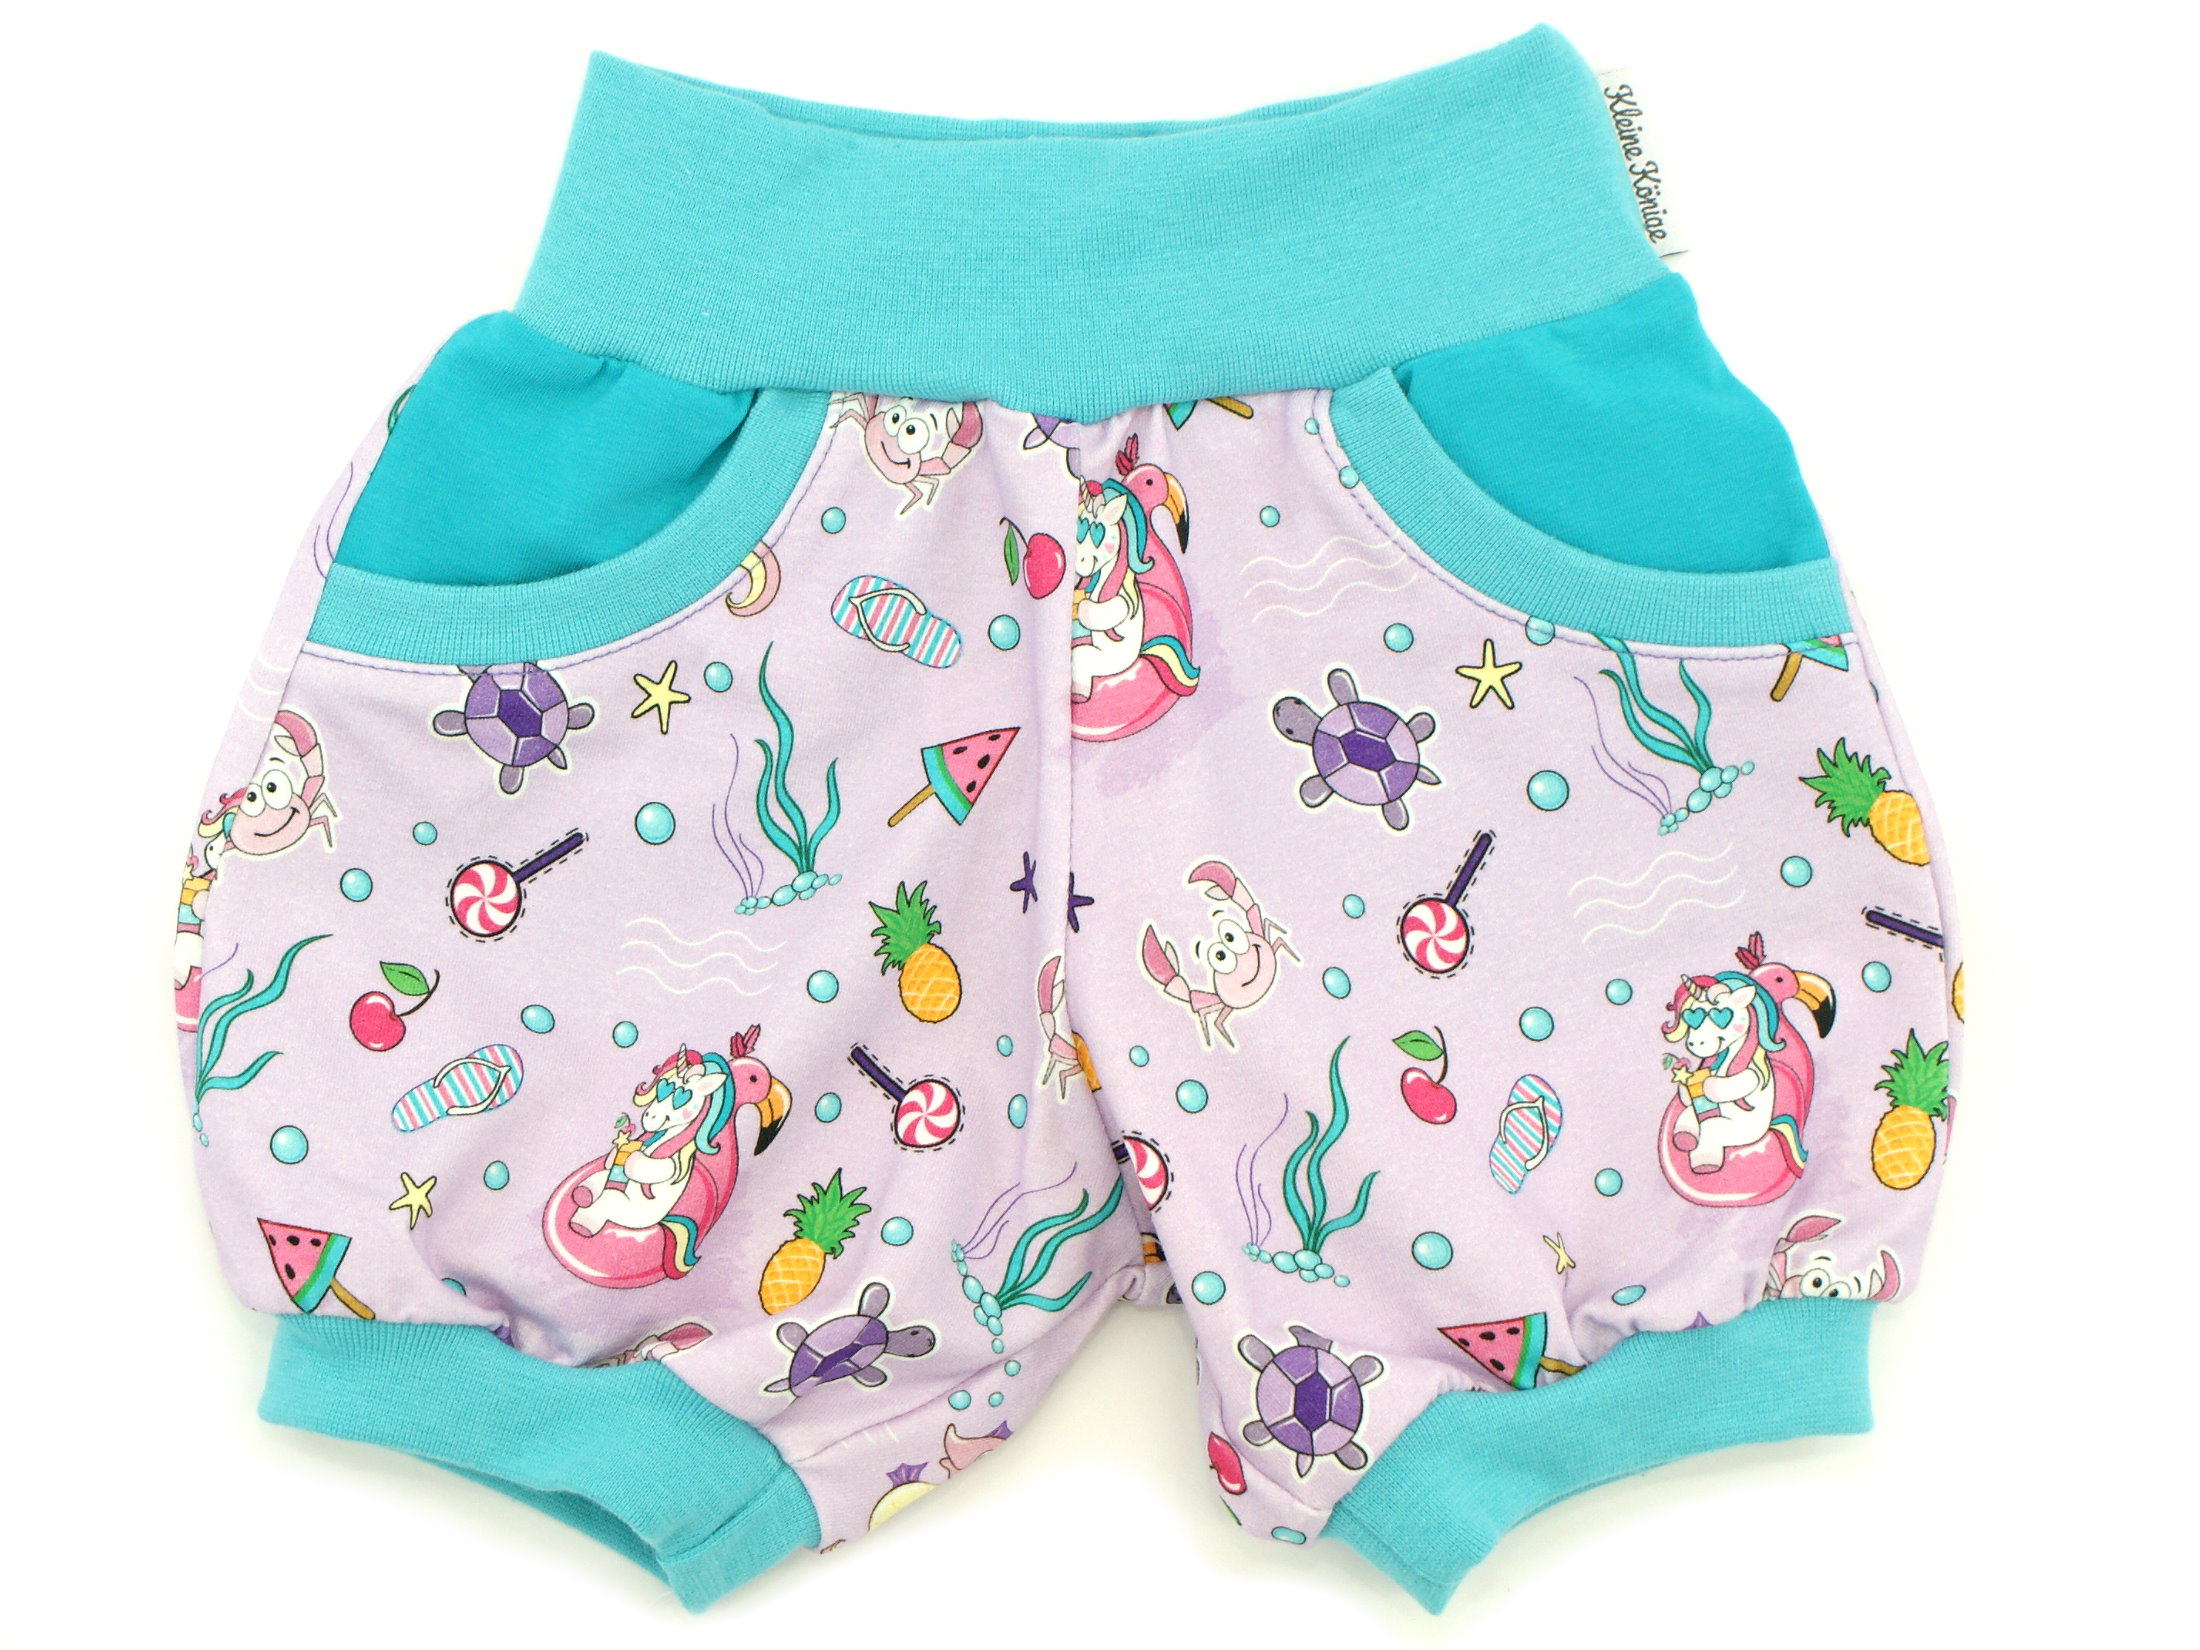 Kinder Sommer Shorts mit Taschen "Unicornparty" flieder aqua